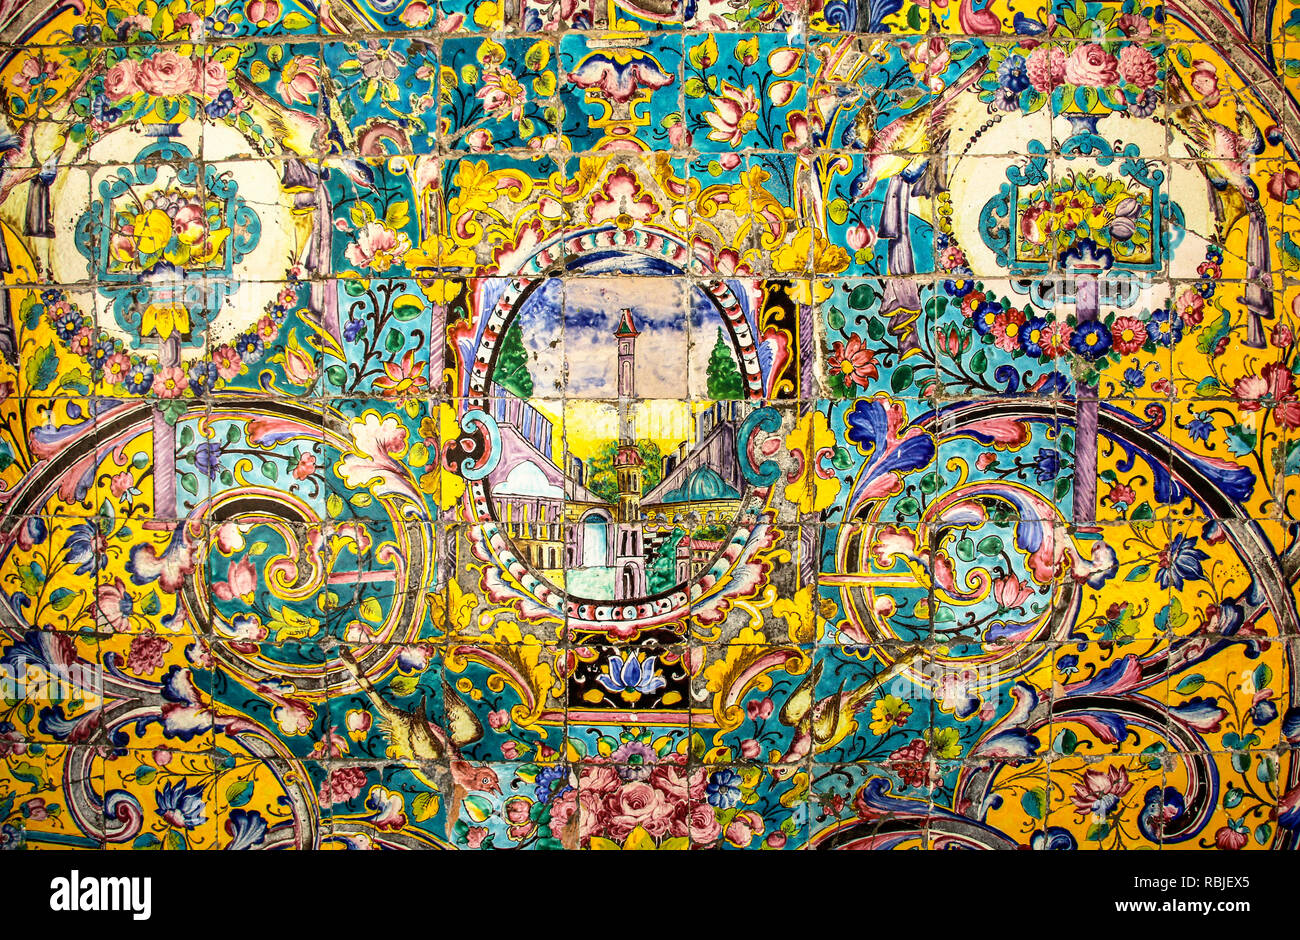 Teheran, Iran - 17. SEPTEMBER 2018: Buntes Mosaik und Fliesen in der traditionellen persischen Stil an der Wand des alten Golestan Palast in Teheran Stockfoto